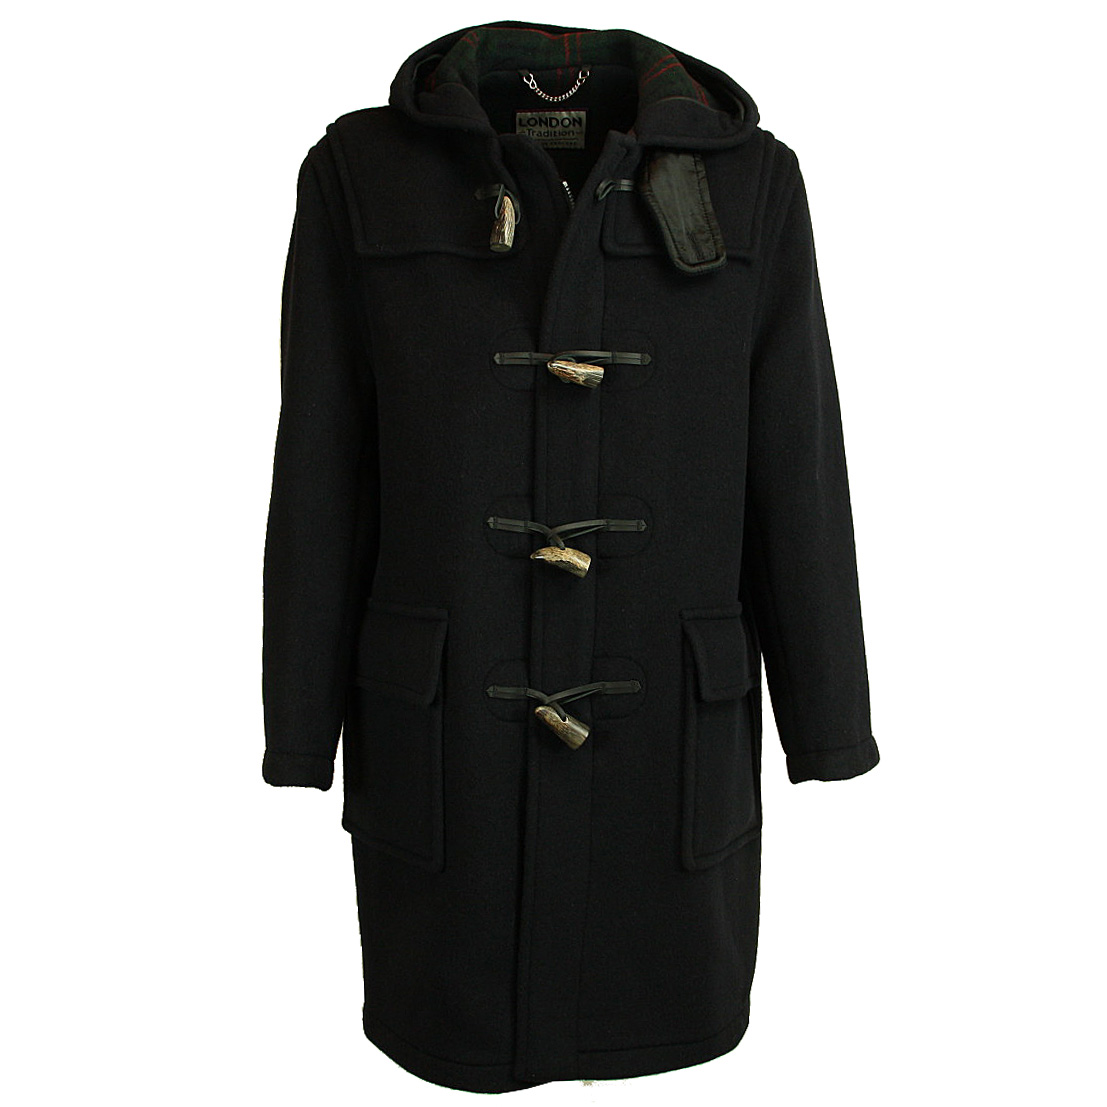 Heerlijk montycoats bestel je eenvoudig online bij Olsterhof